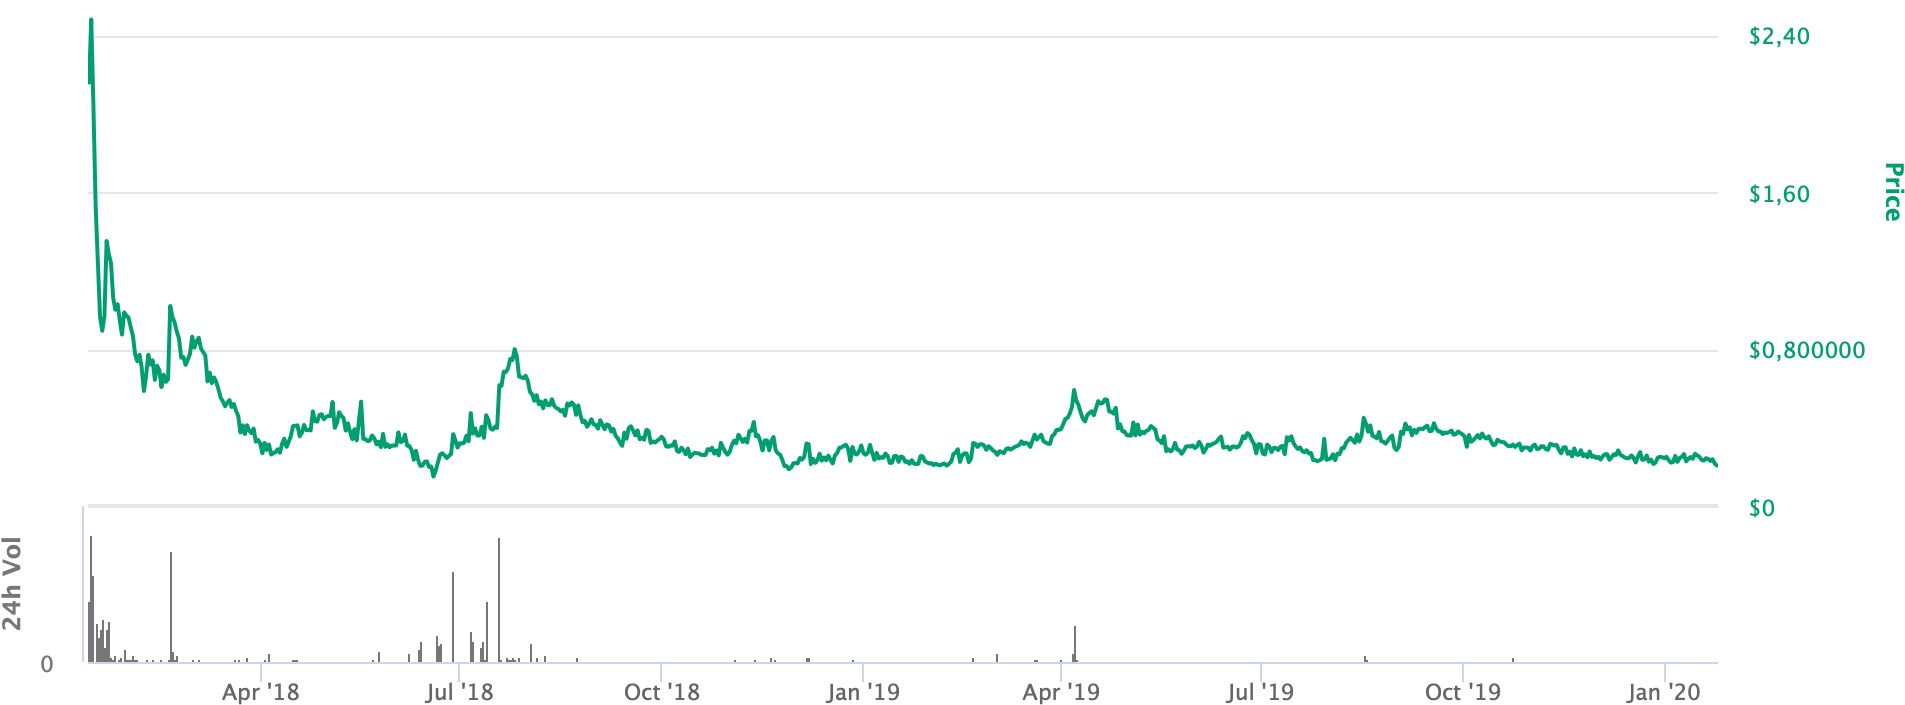 Цена токена UTT во время ICO составляла 0,9 $, выросла до 2,4 $ в январе 2018 года на пике криптовалютного хайпа, а потом упала до 0,2 $. Данные с портала Coinmarketcap